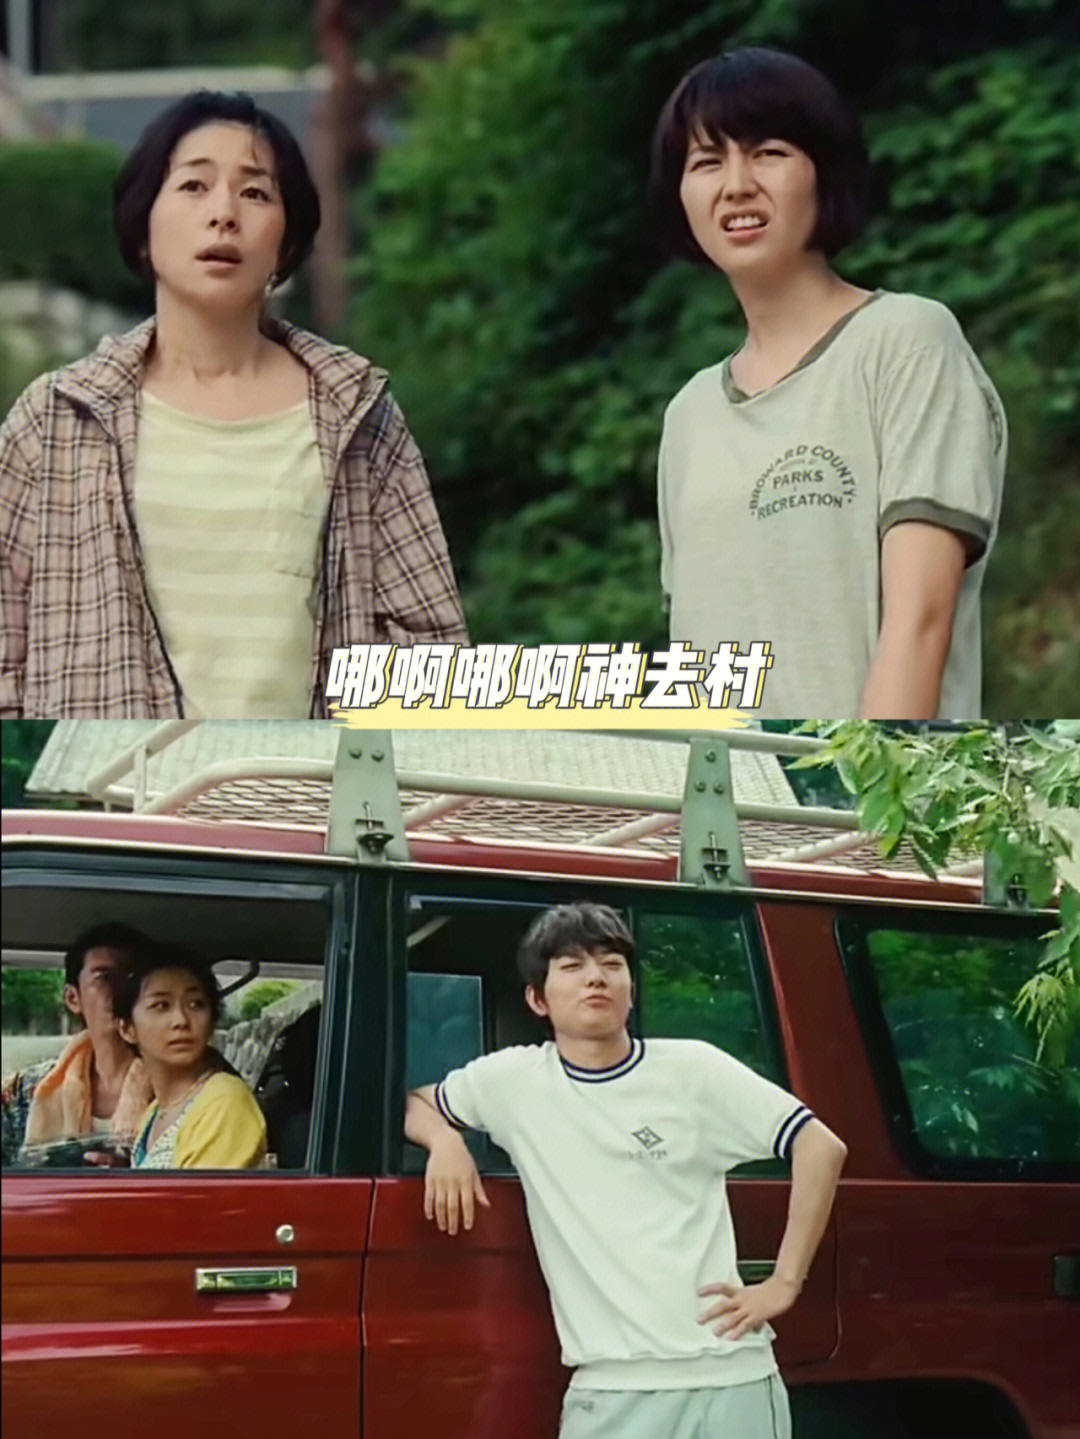 26615刷日本青春喜剧片《哪啊哪啊神去村》,依然觉得非常好看